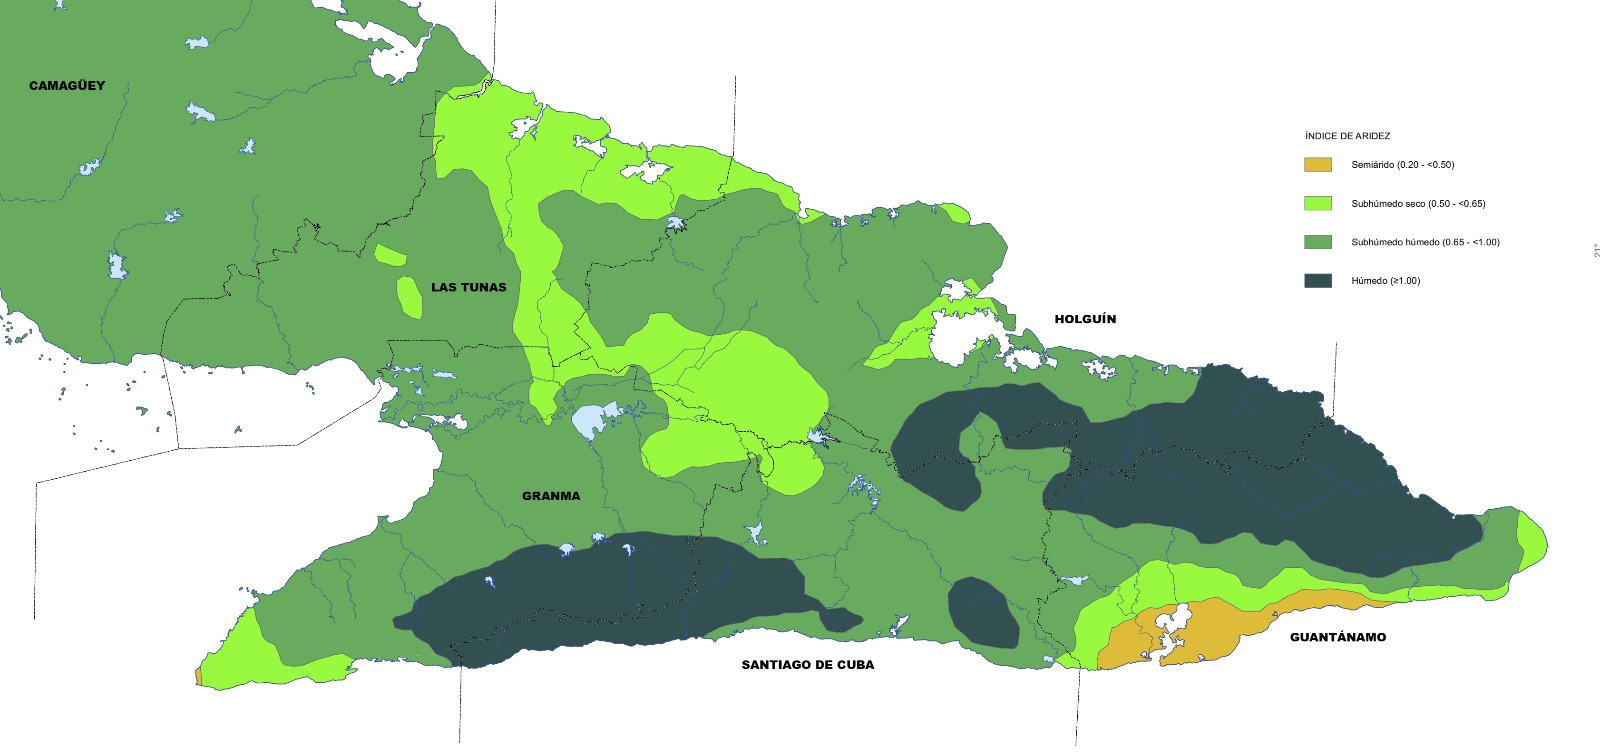 Mapa del índice de aridez (fragmento) tomado del Atlas Nacional de Cuba, edición LX Aniversario.